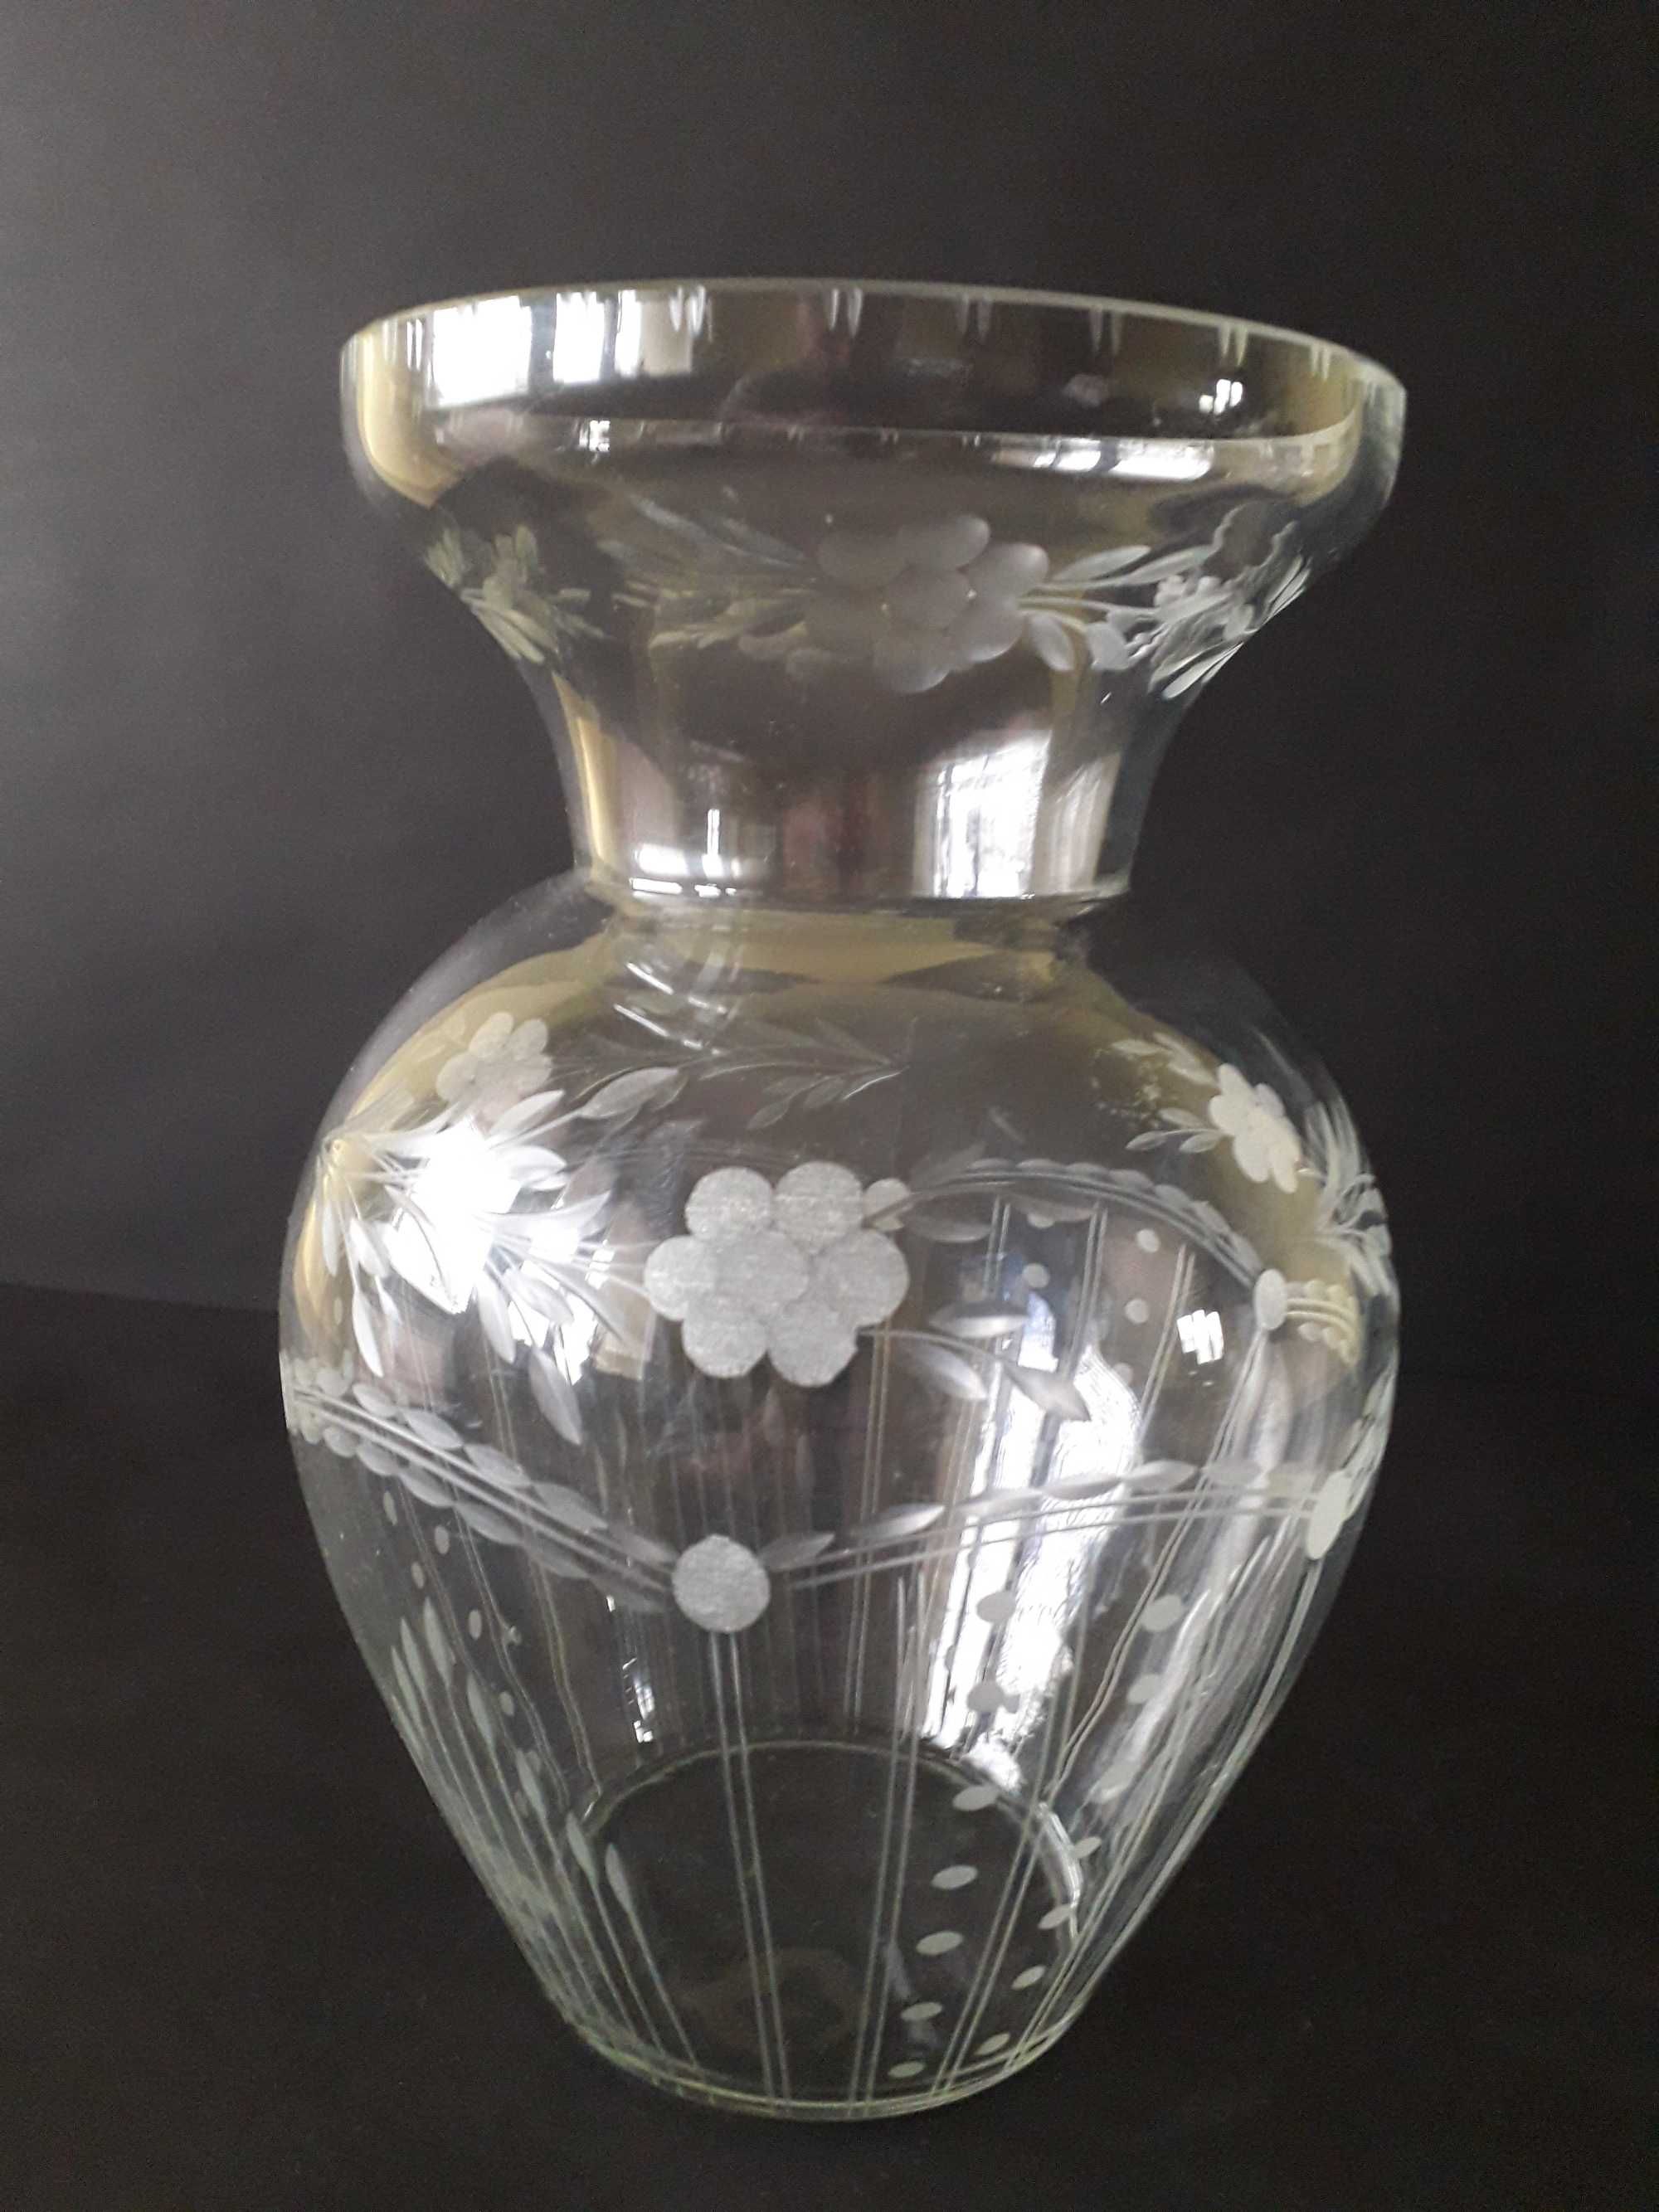 Szkło stare piękny duży ręcznie szlifowany wazon kolekcjonerski.